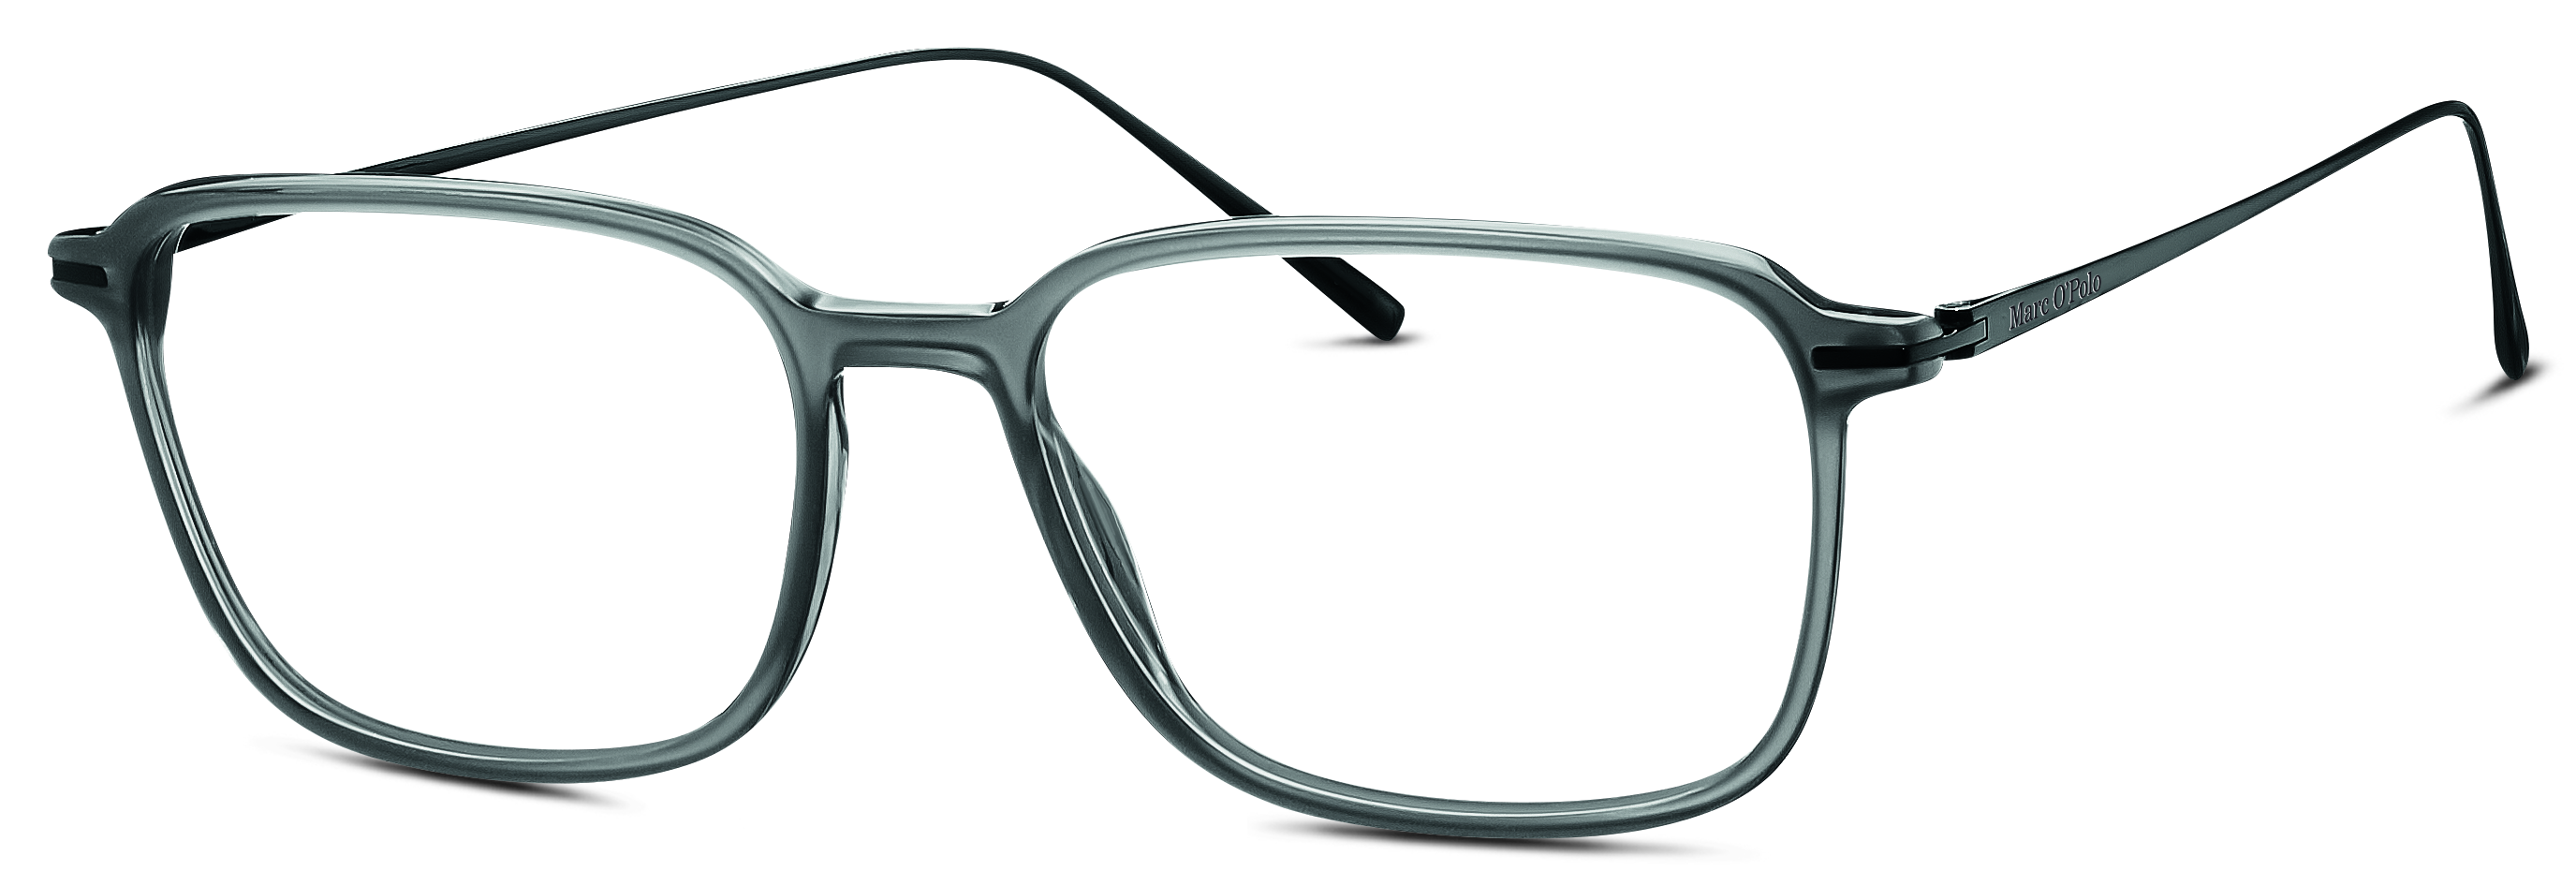 Das Bild zeigt die Korrektionsbrille 503153 30 von der Marke Marc o Polo in grau.